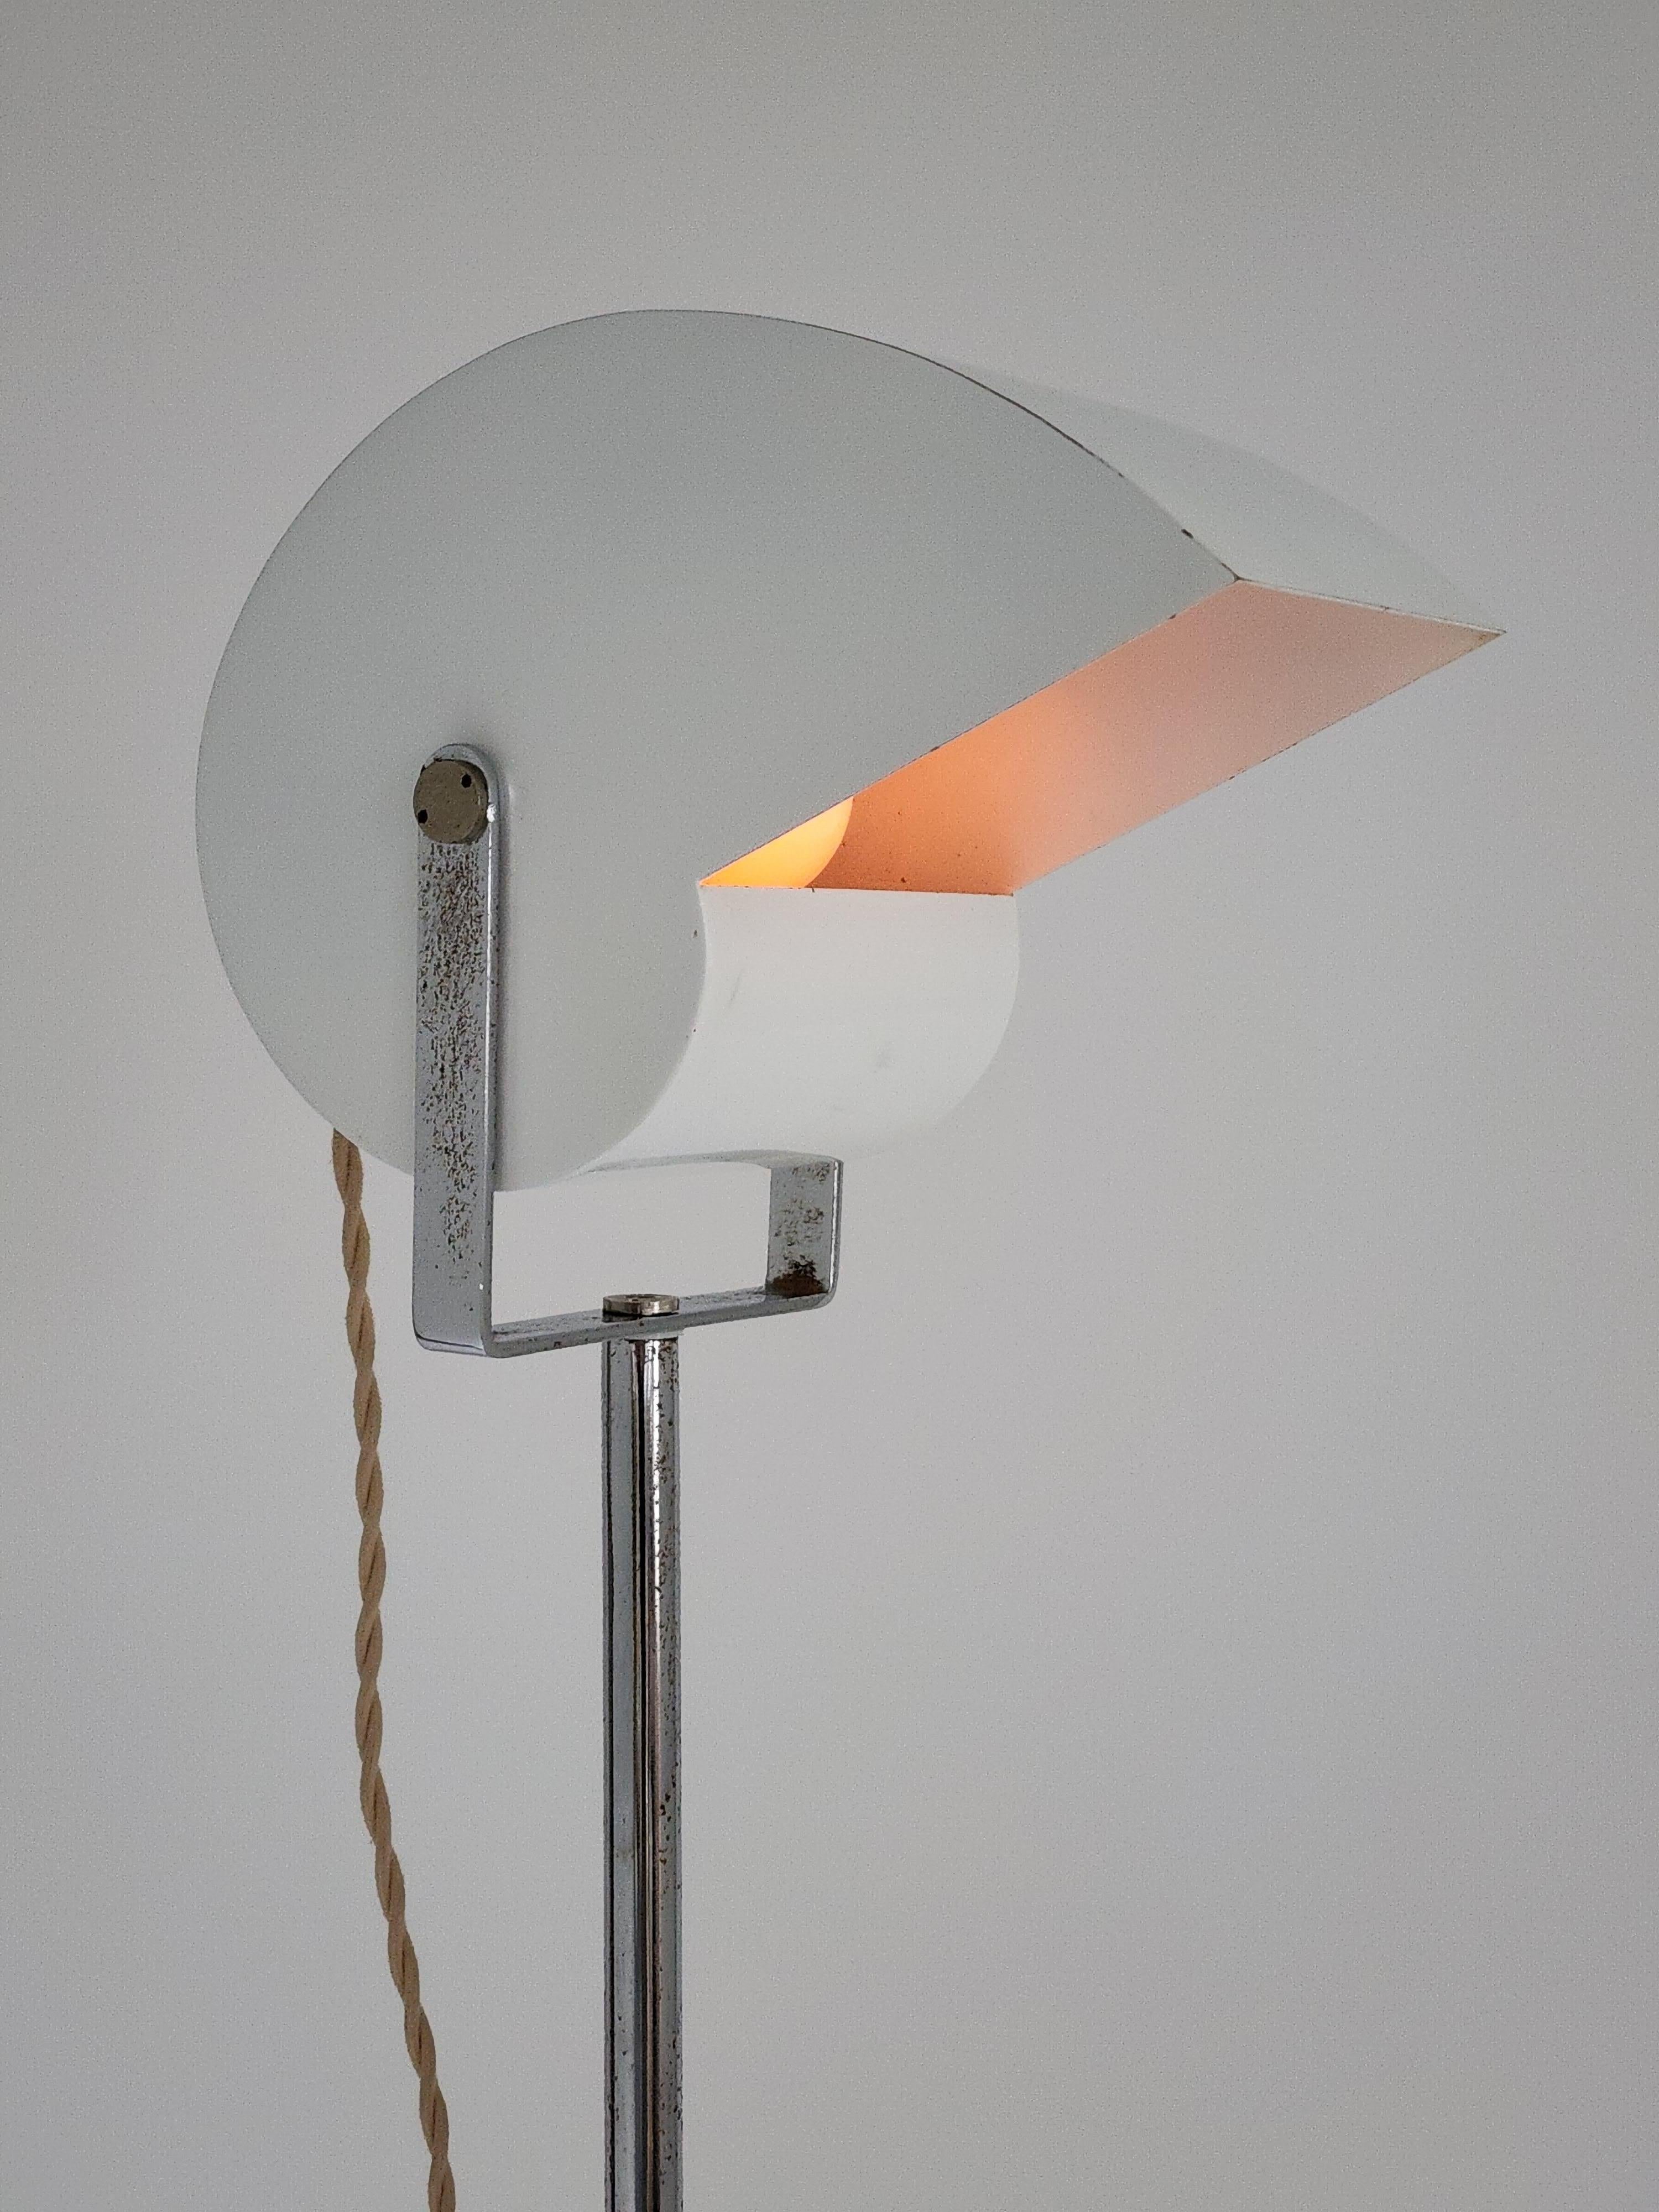 Rara lámpara de pie ' Caracol ' del arquitecto Giuseppe Raimondi para Studio Luce, Italia. 

La pantalla esmaltada gira 360 grados en horizontal y 180 grados hacia arriba y hacia abajo.  

Construcción robusta y bien hecha. 

La altura de la lámpara